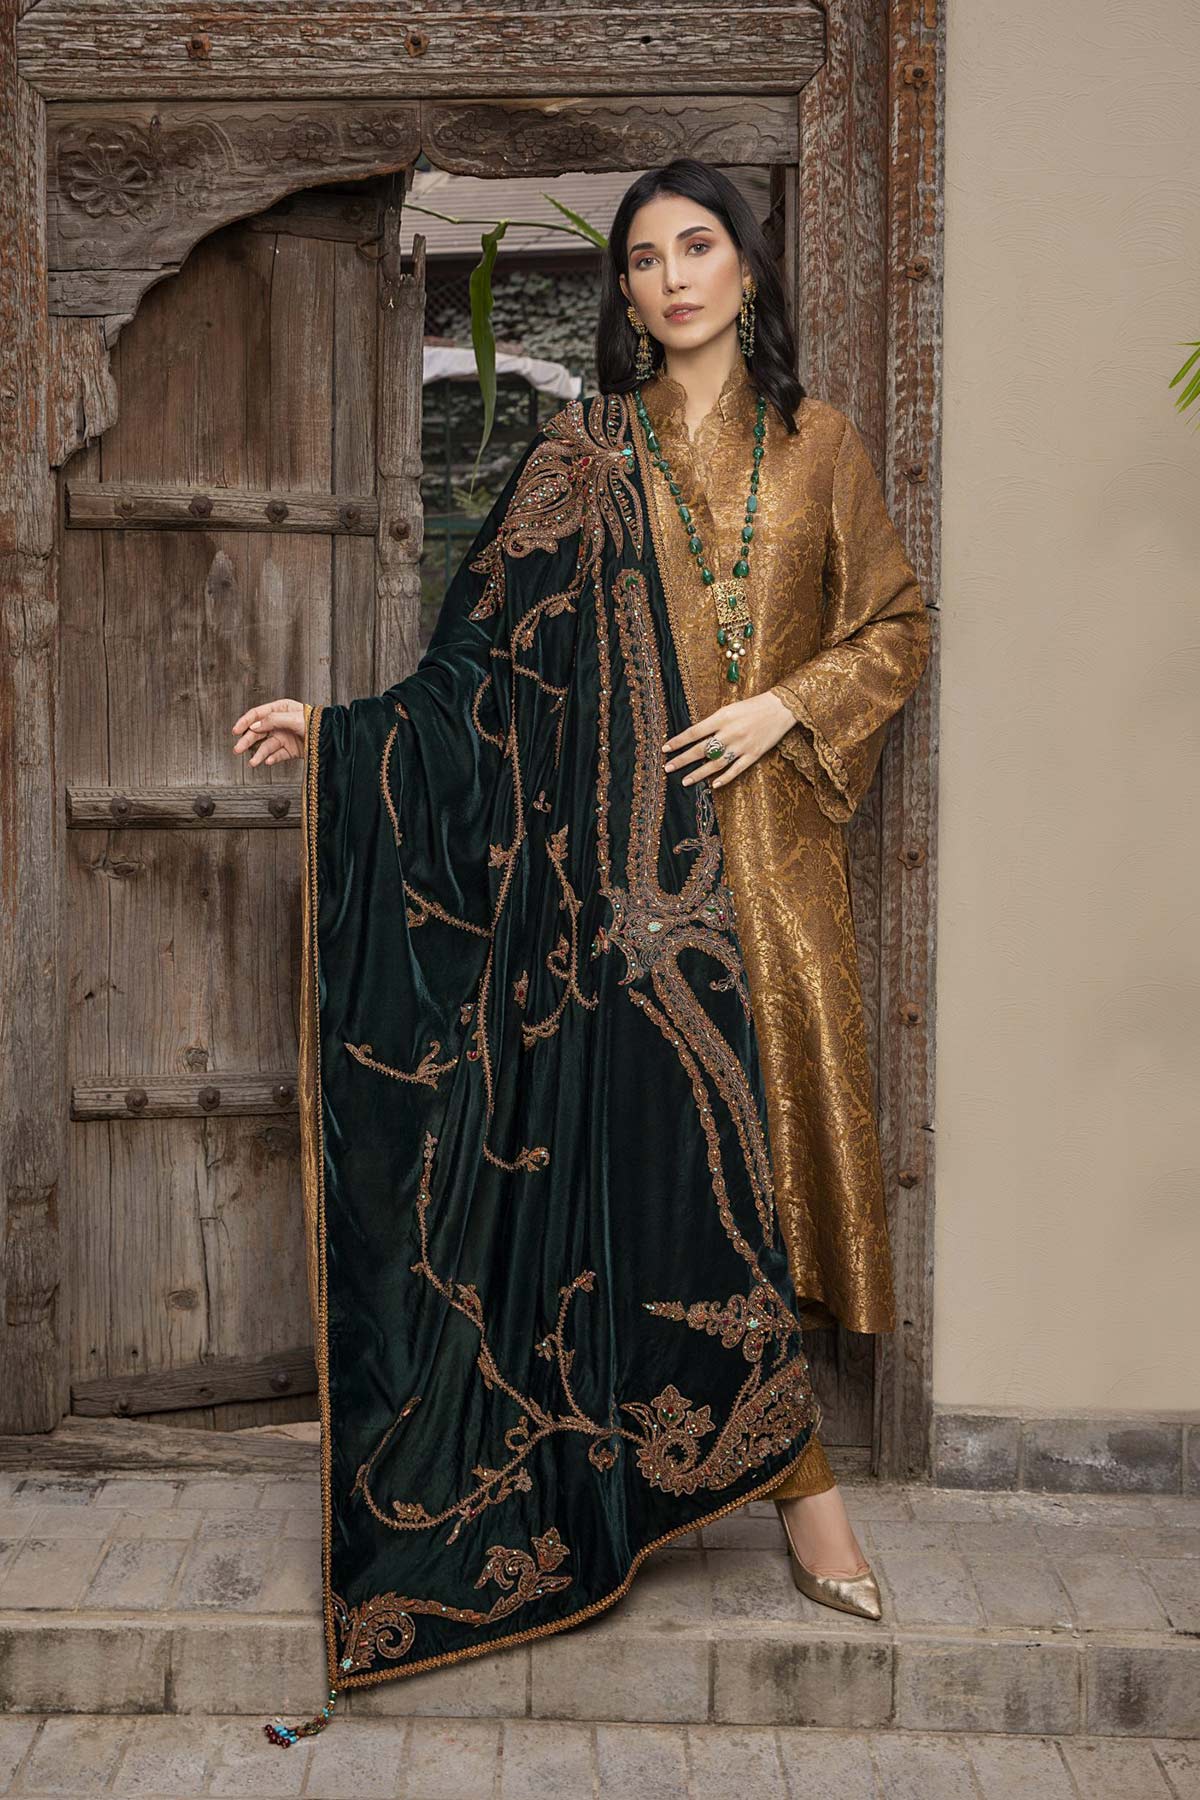 The Royal Empress Shawl - Nilofer Shahid